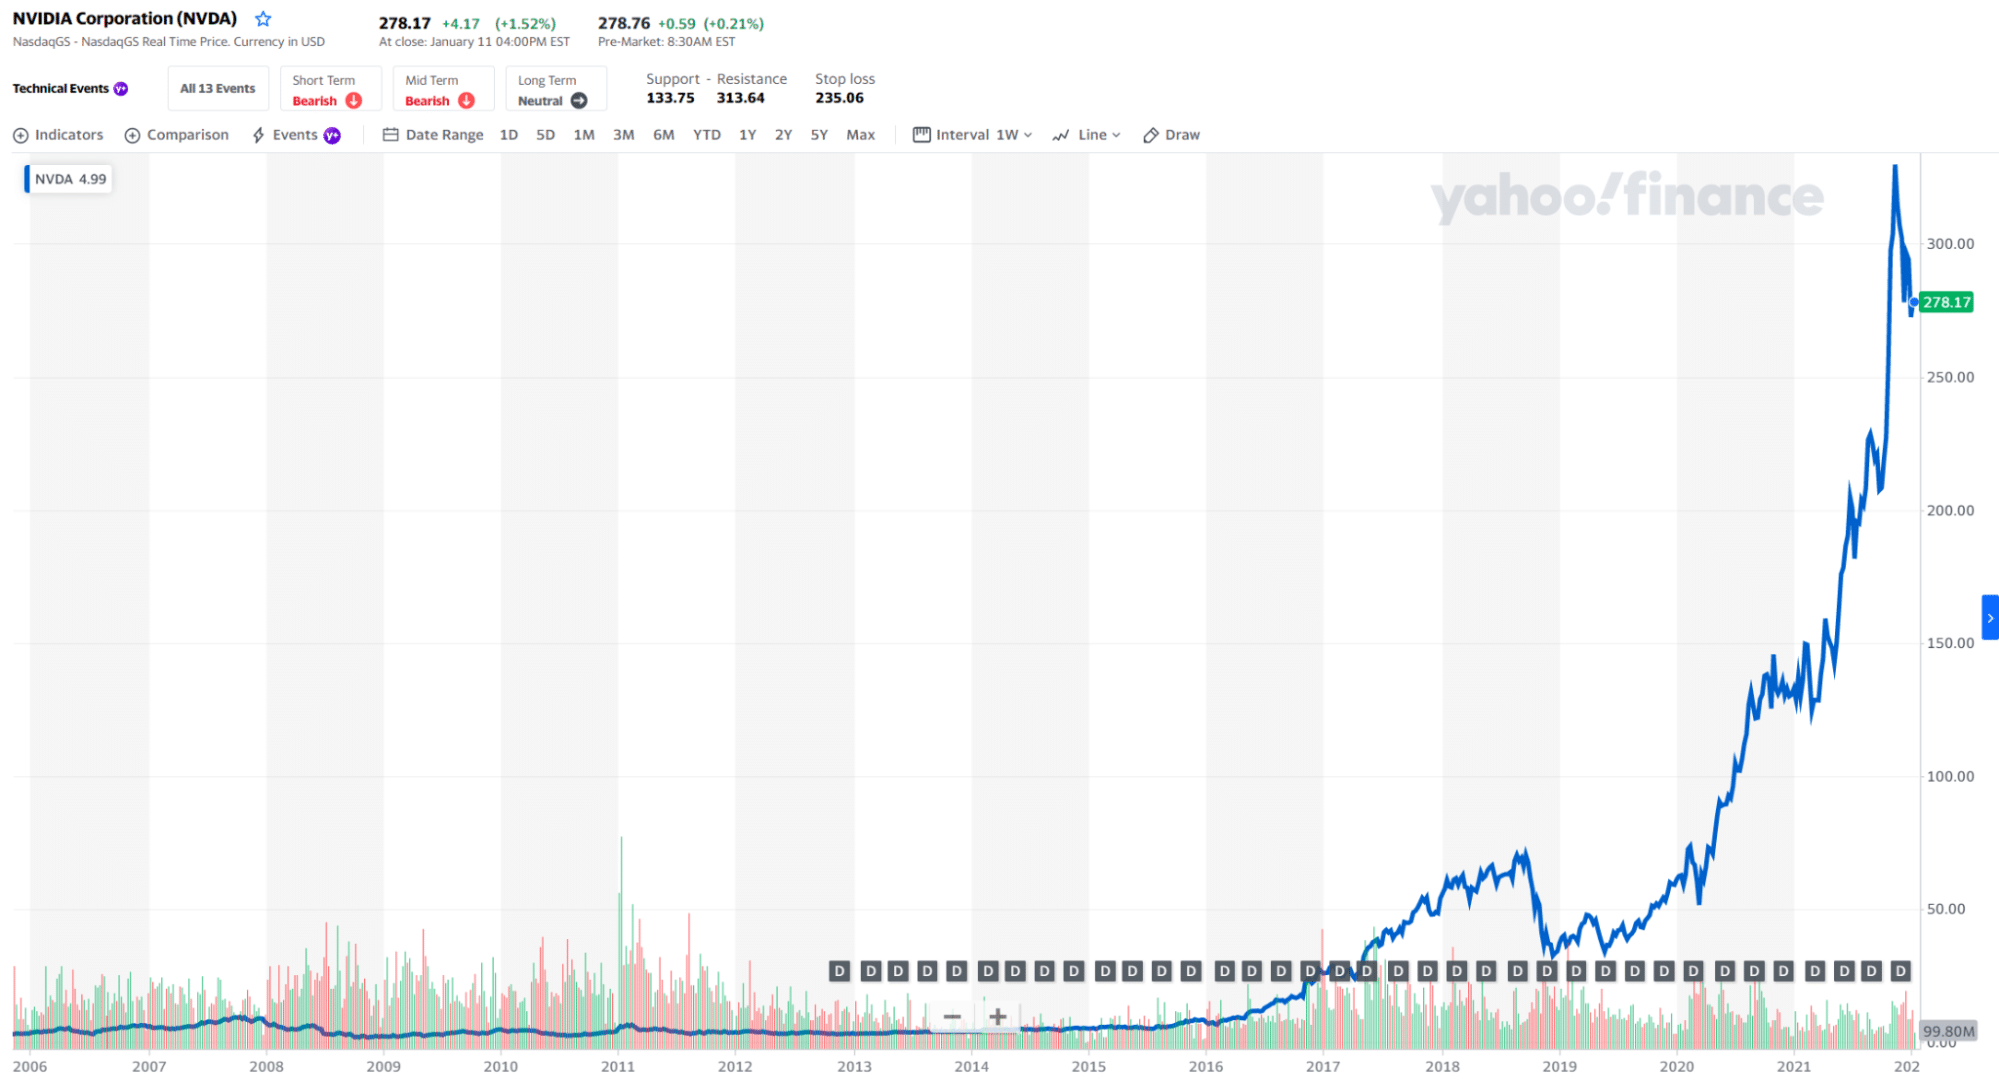 NVDA stock price chart 2006-2022